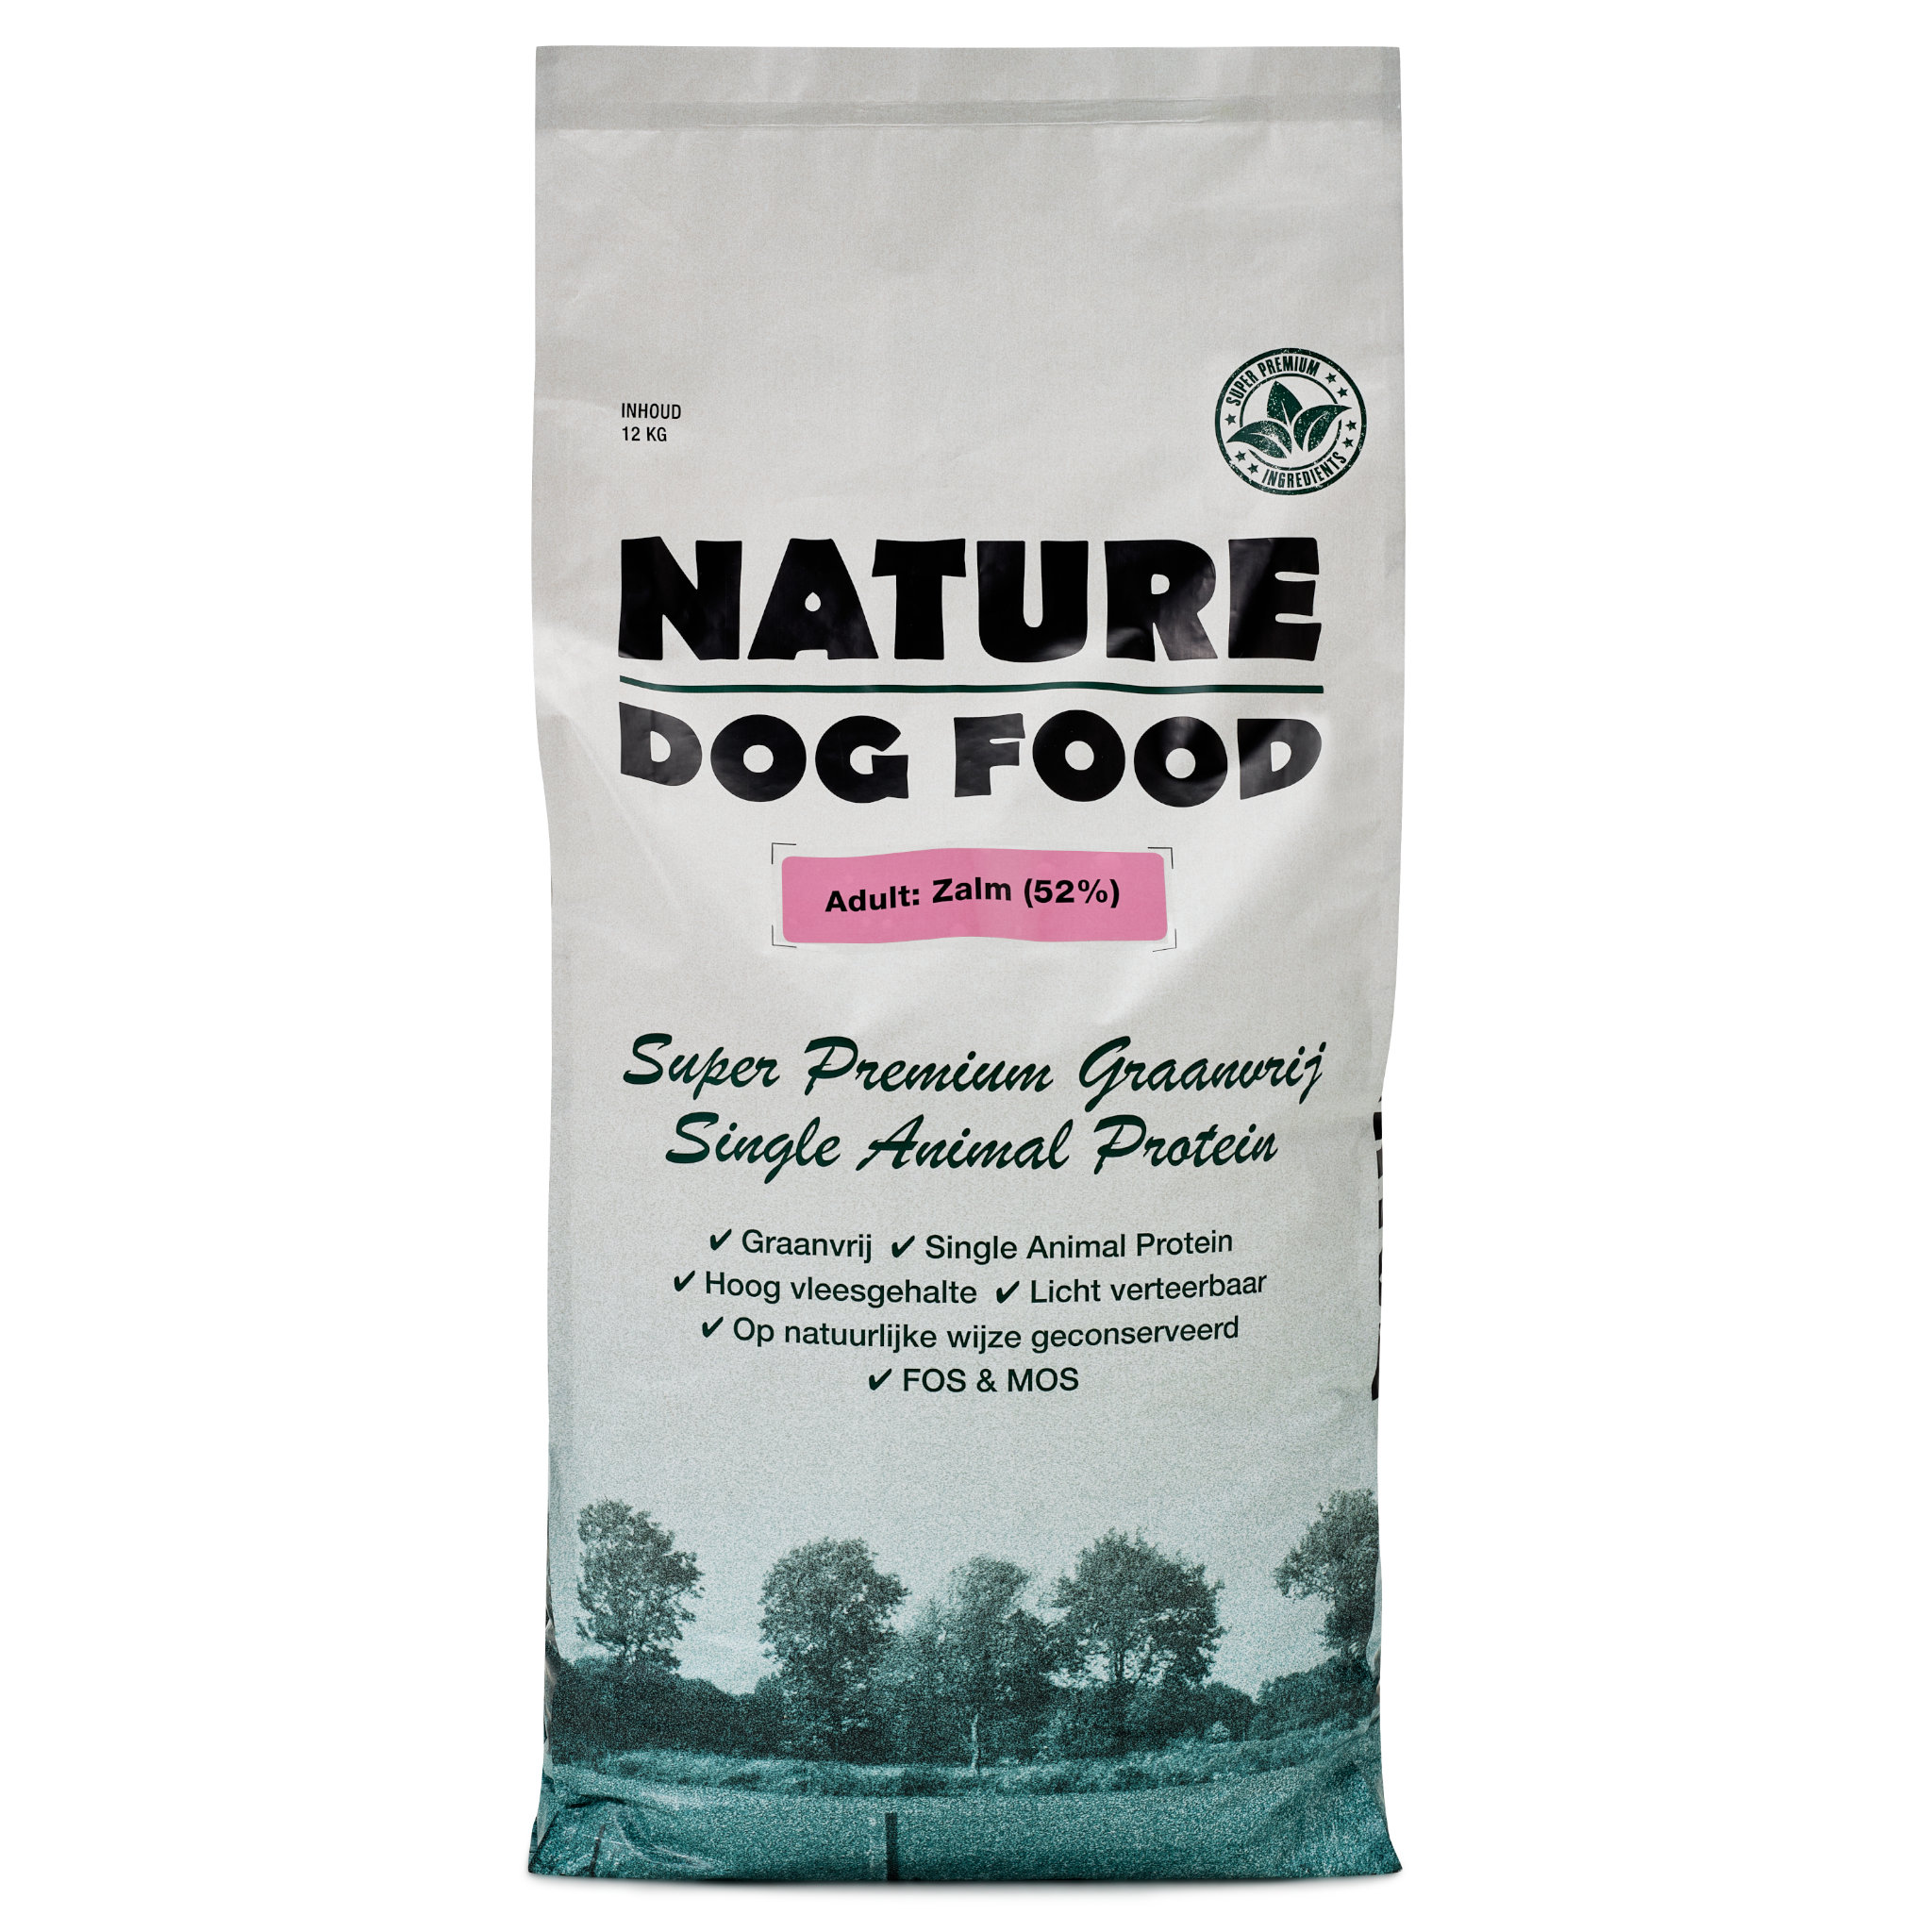 Graanvrij hondenvoer met zalm - Nature Dog Food